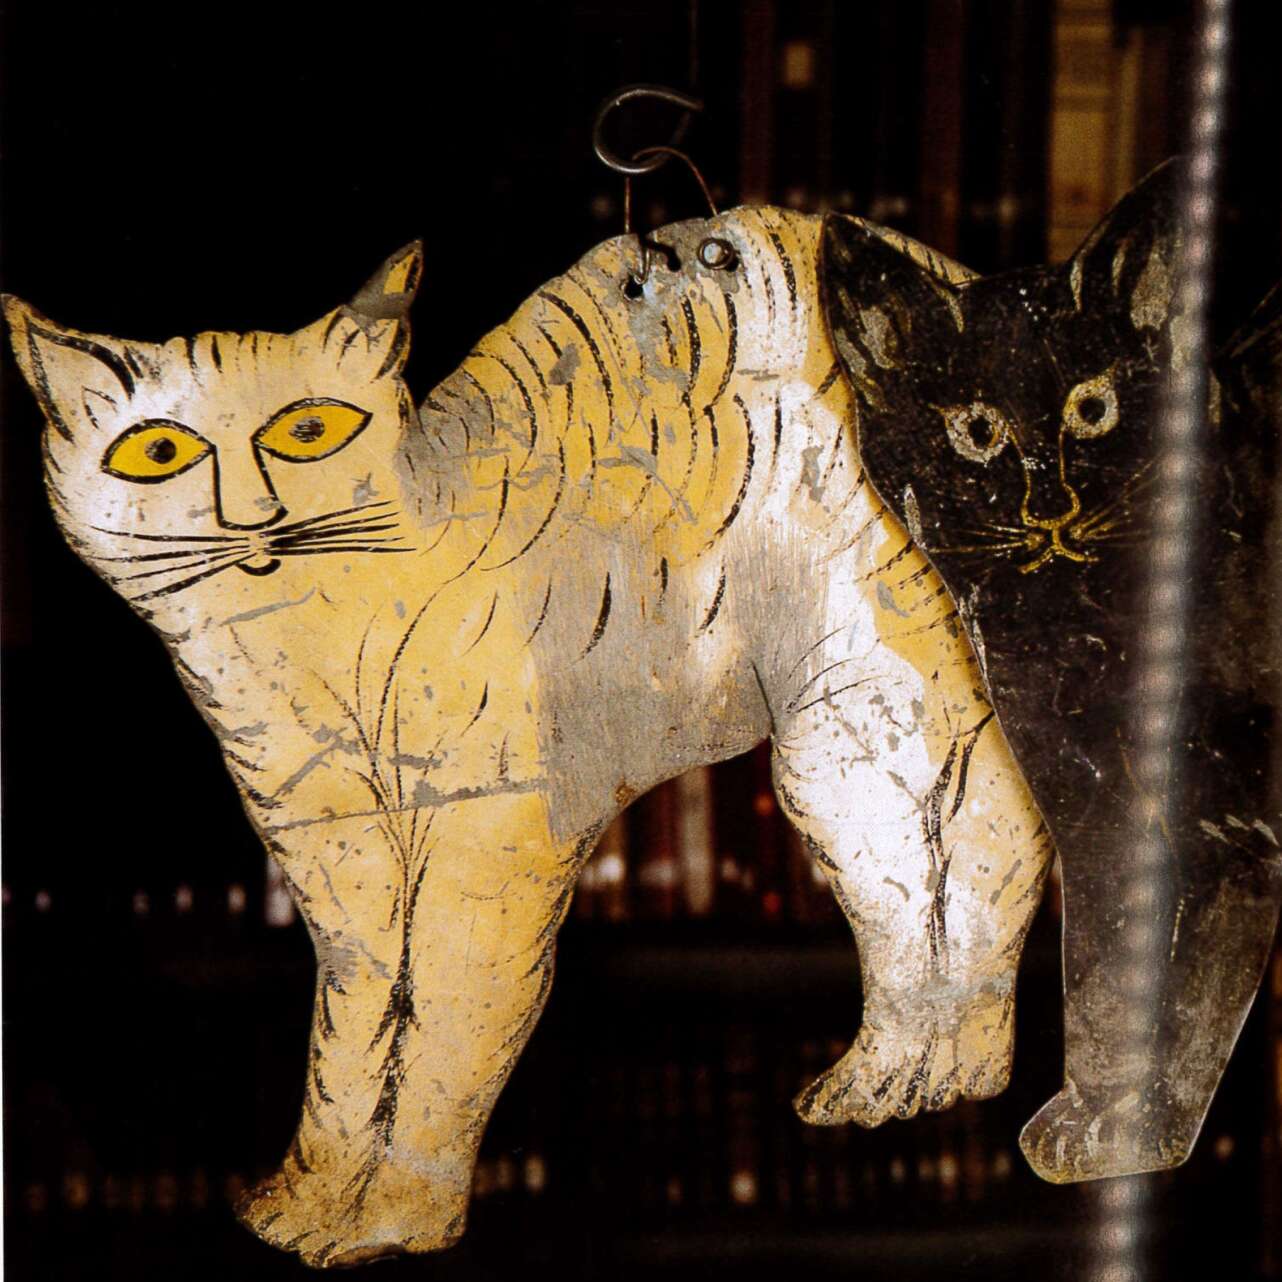 Marioneta de gatos de la primera Ã©poca del local. Se dice que su autor es Pablo Picasso. Foto: Archivo FotogrÃ¡fico de Barcelona.